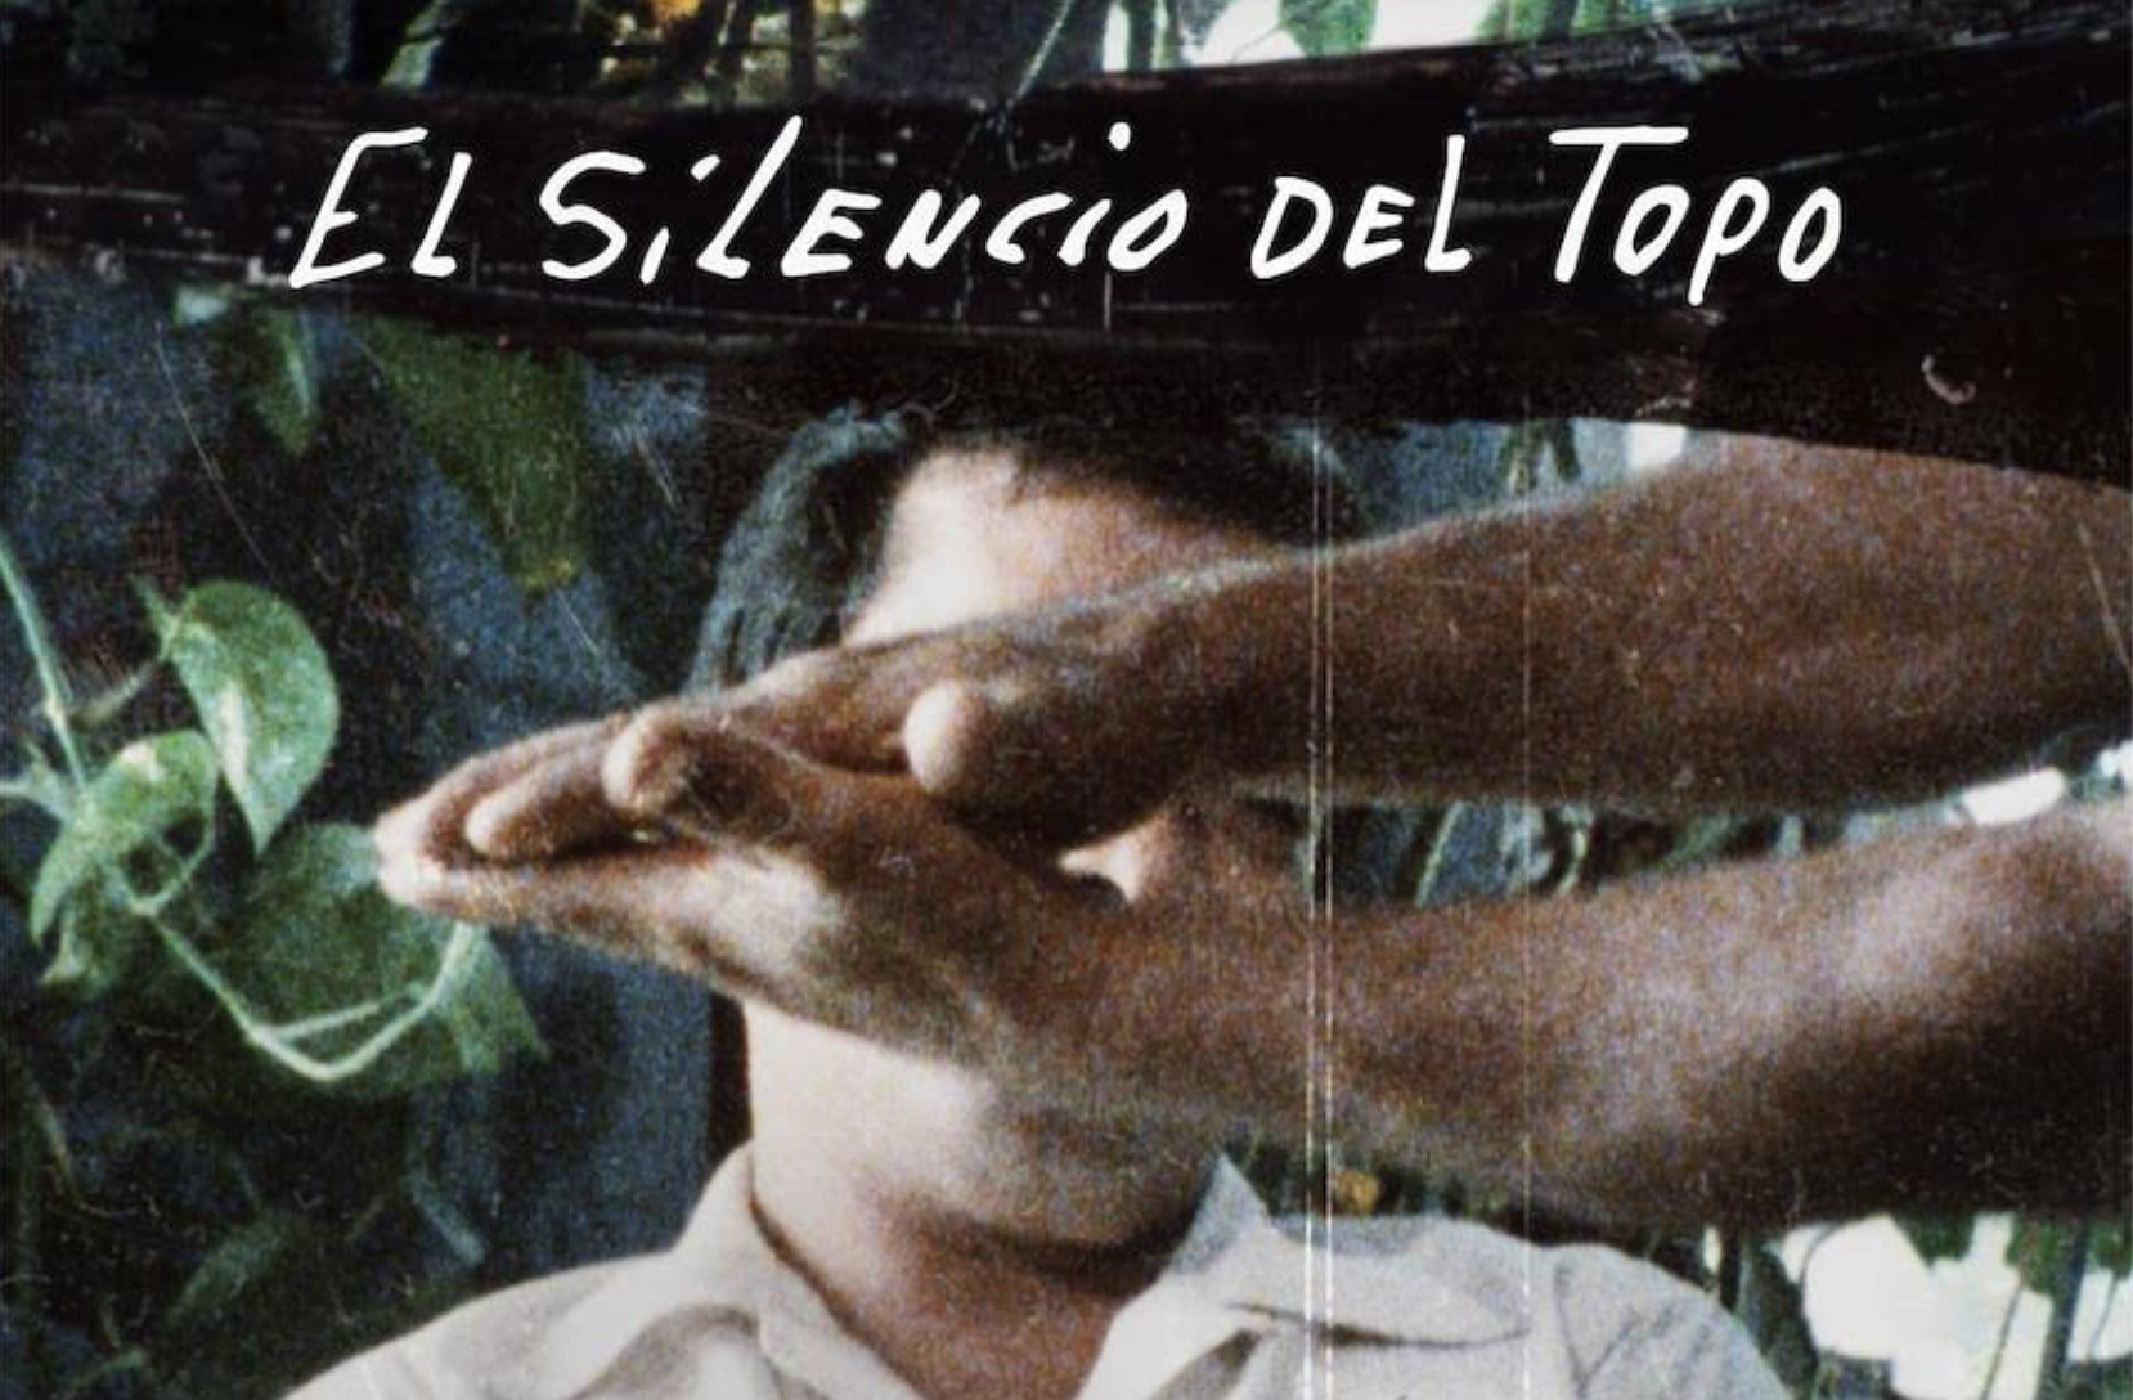 Poster image for the film El Silencio Del Topo (2021).